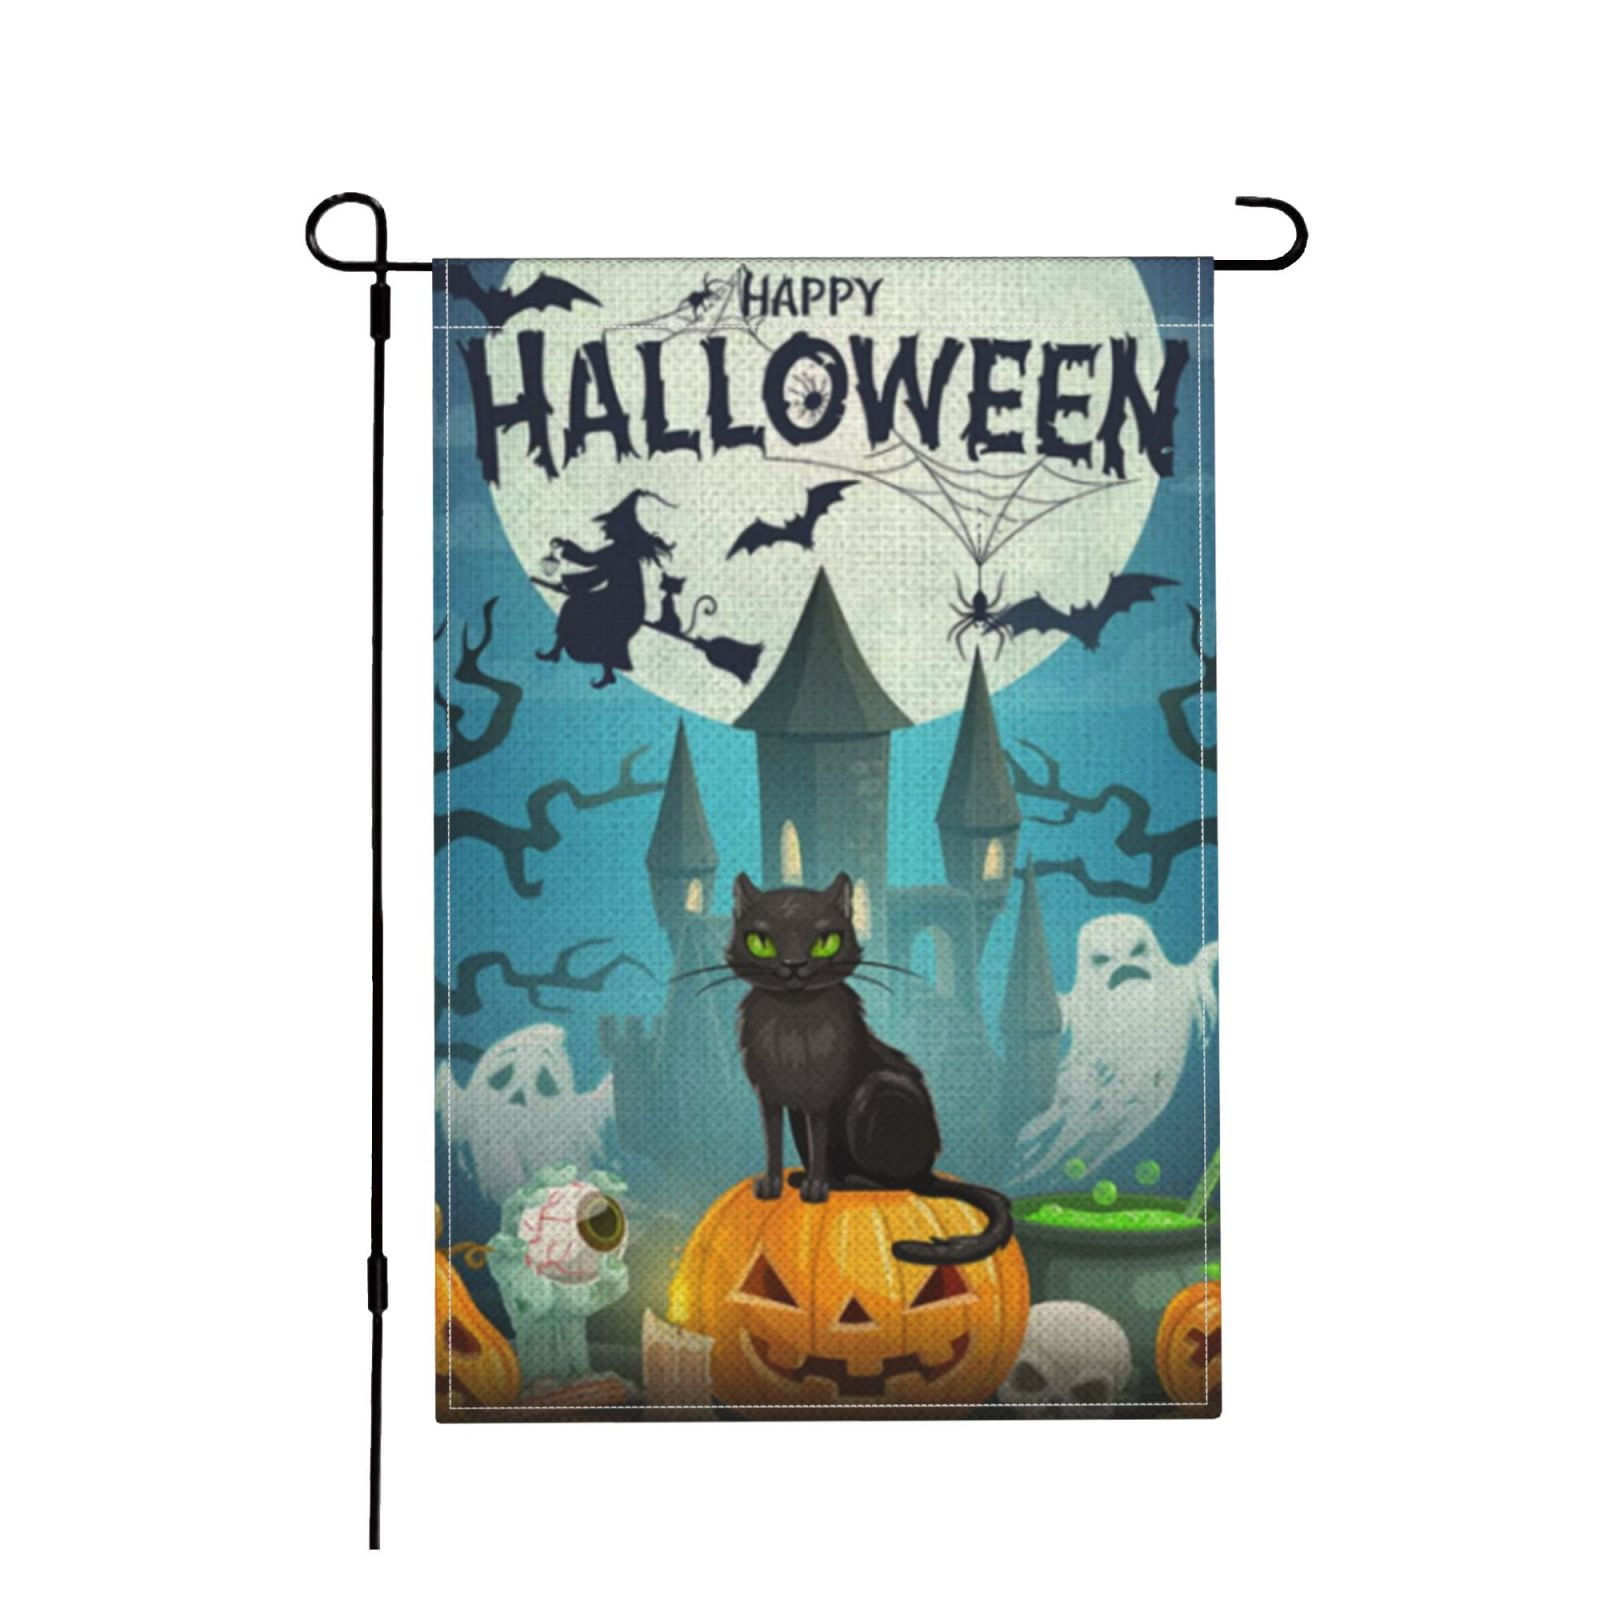 18"x12" Happy Halloween Pumpkin Witch Bat Cat Garden Flag Yard Banner Decor 